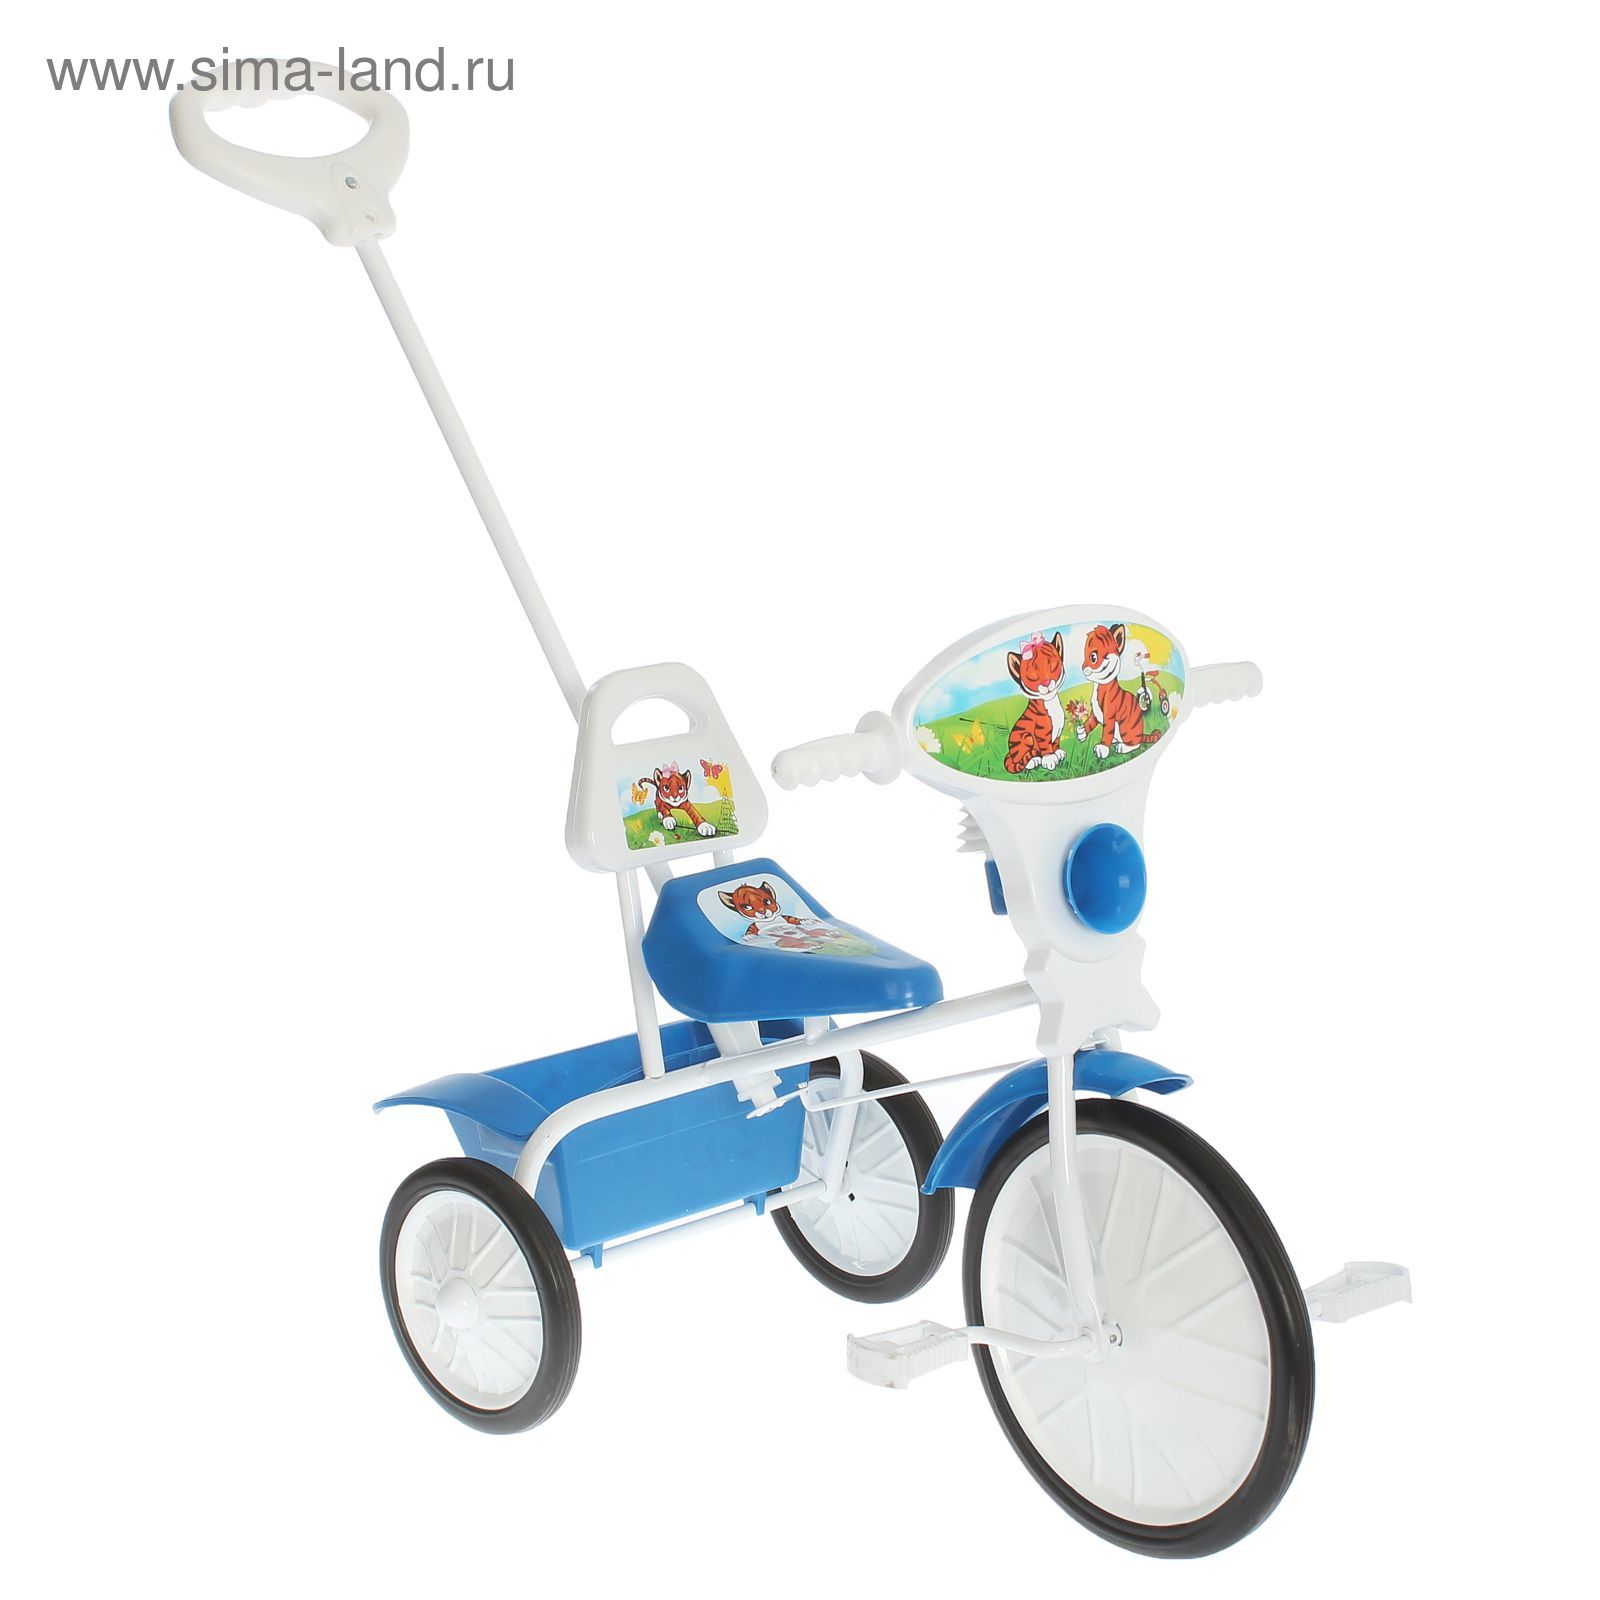 Велосипед трехколесный  "Малыш"  09/3, цвет синий, фасовка: 2шт.